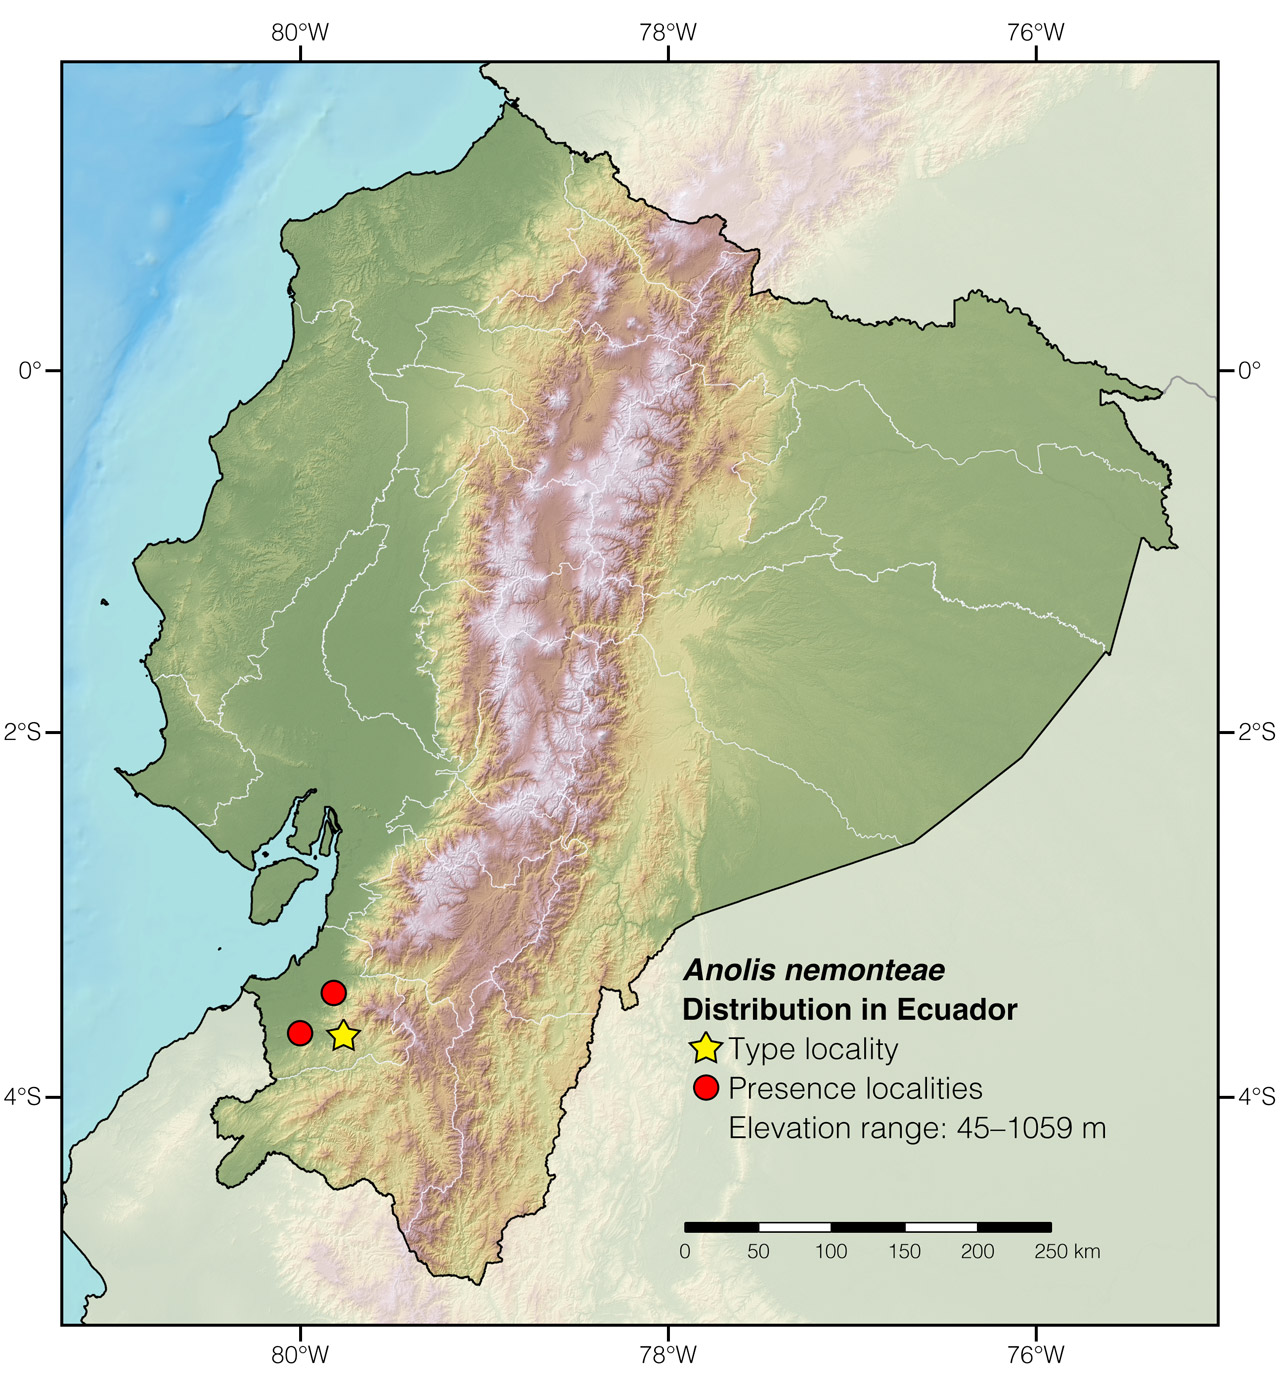 Distribution of Anolis nemonteae in Ecuador